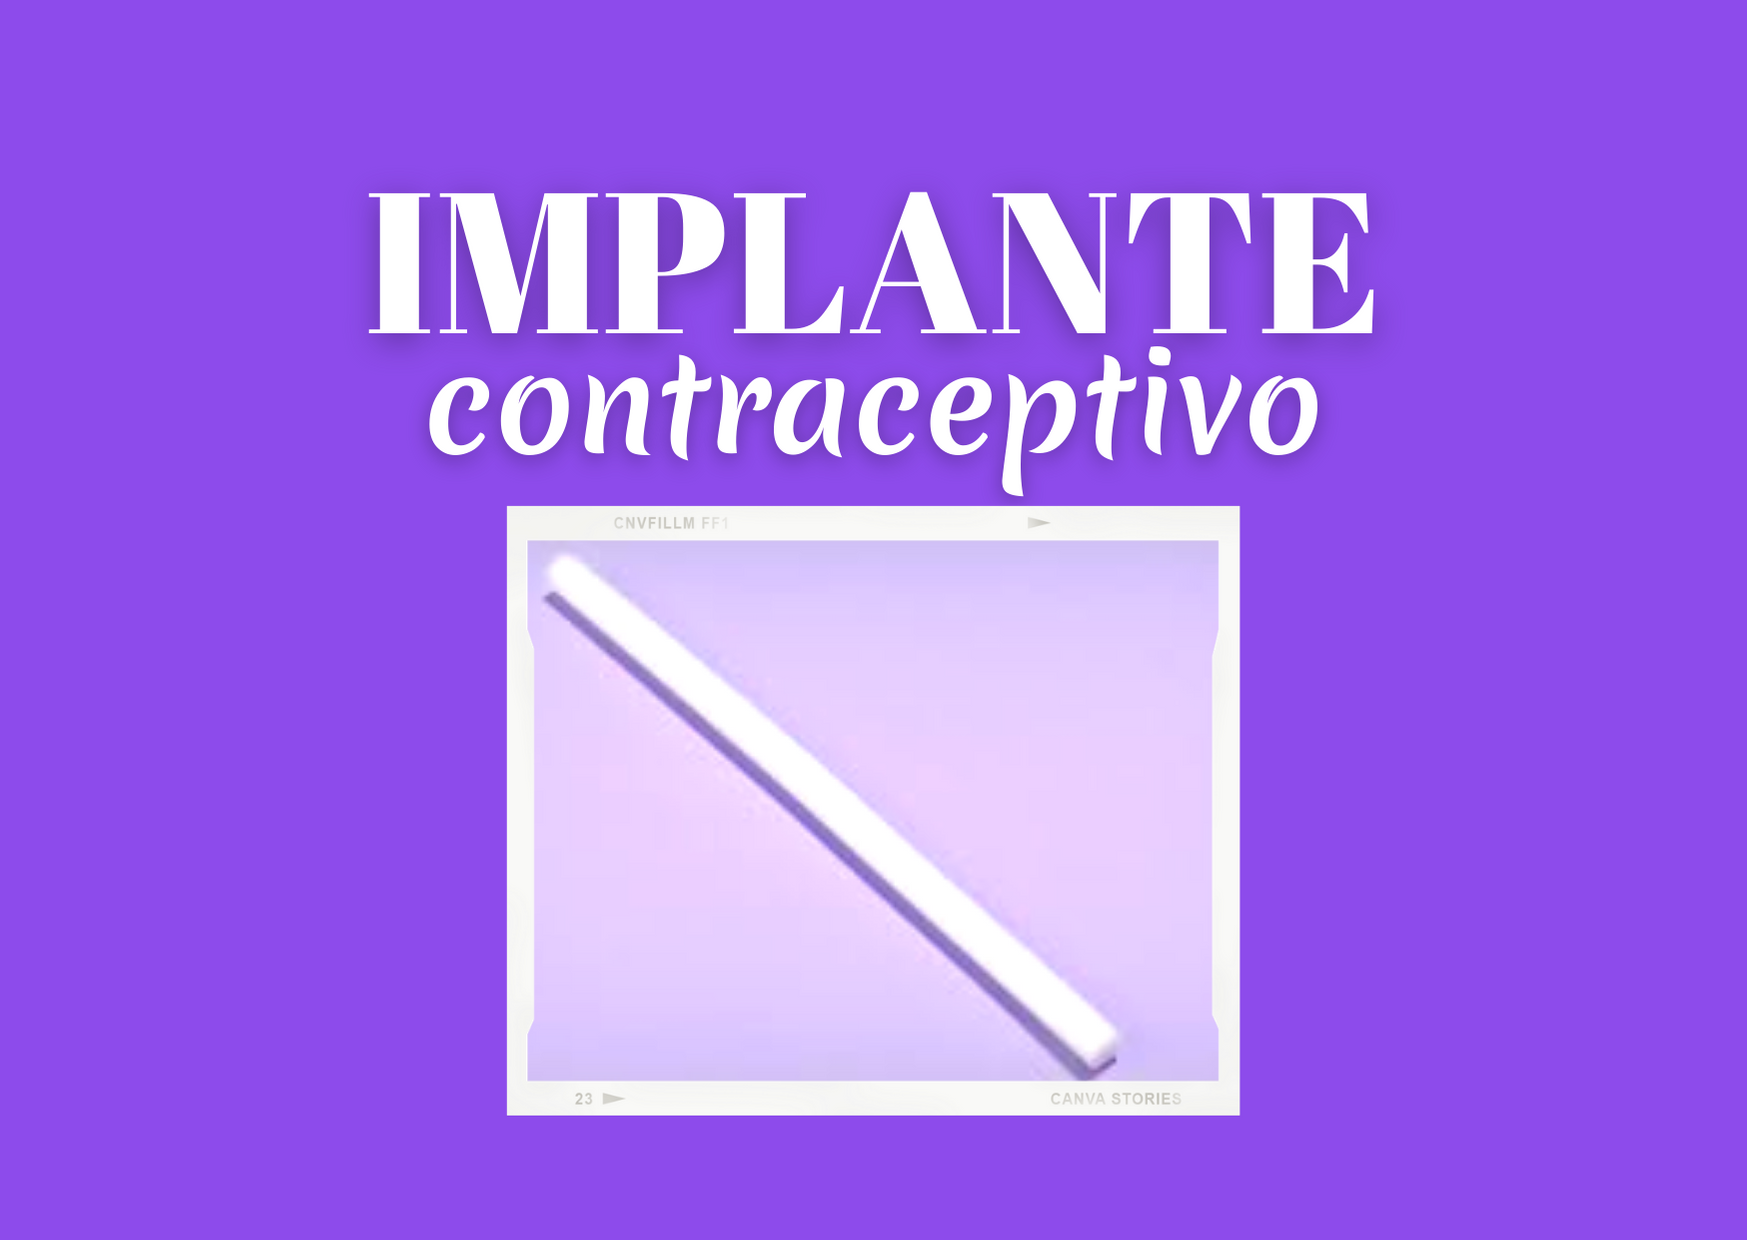 Implante: O Anticoncepcional mais eficaz que existe